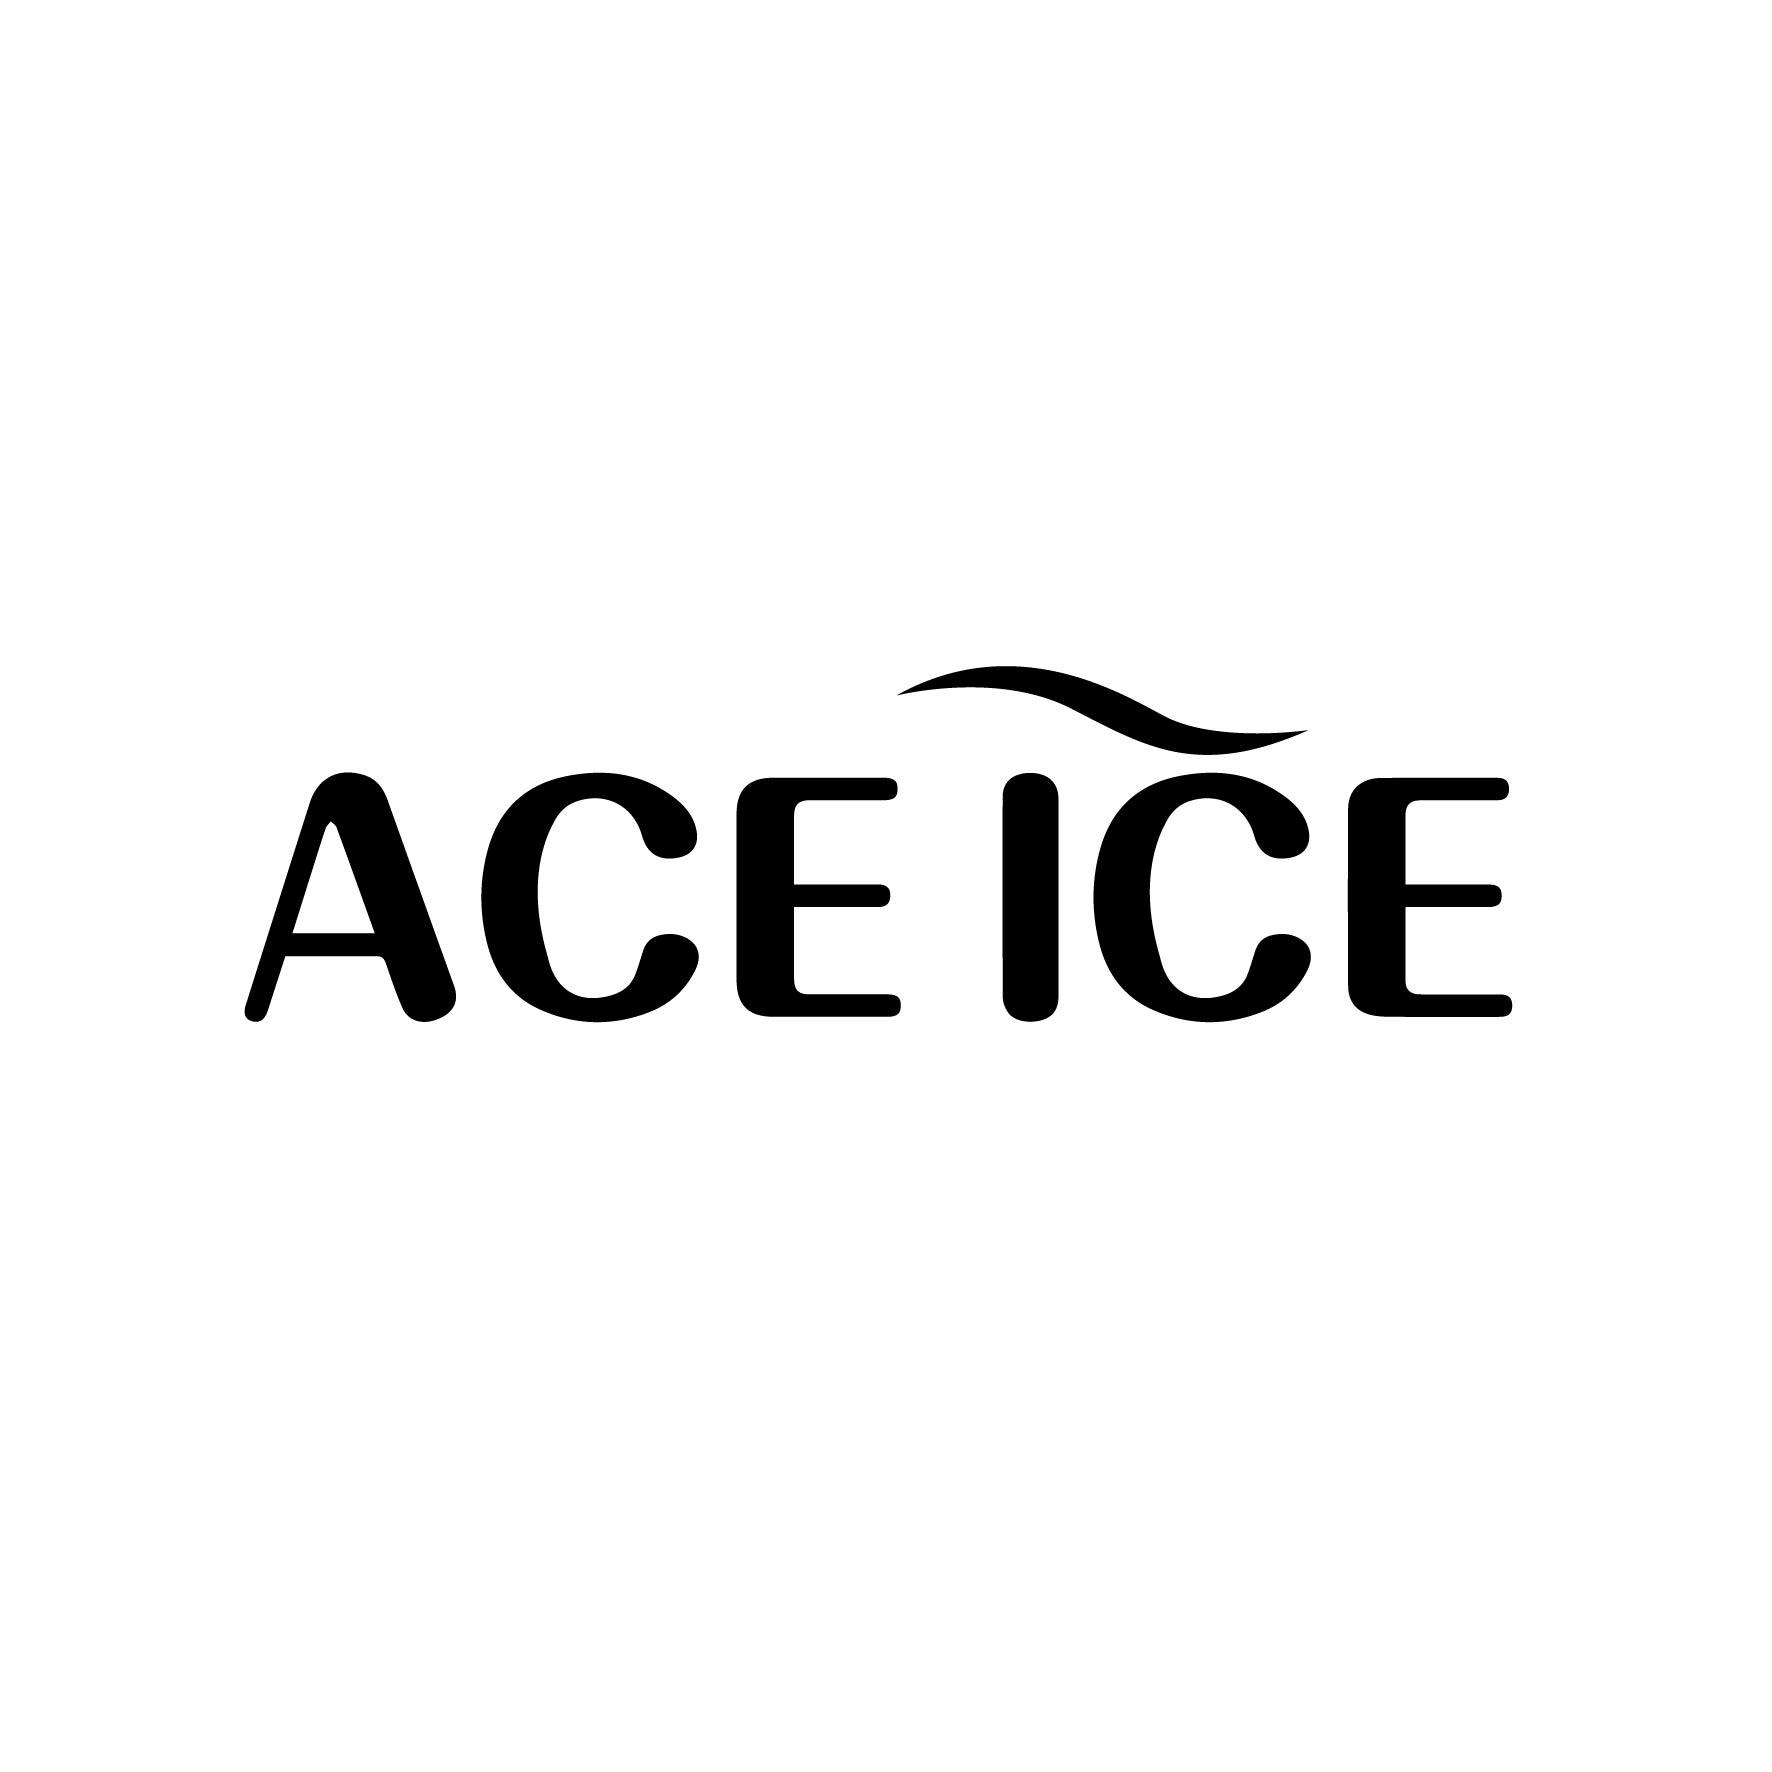 ACE ICE